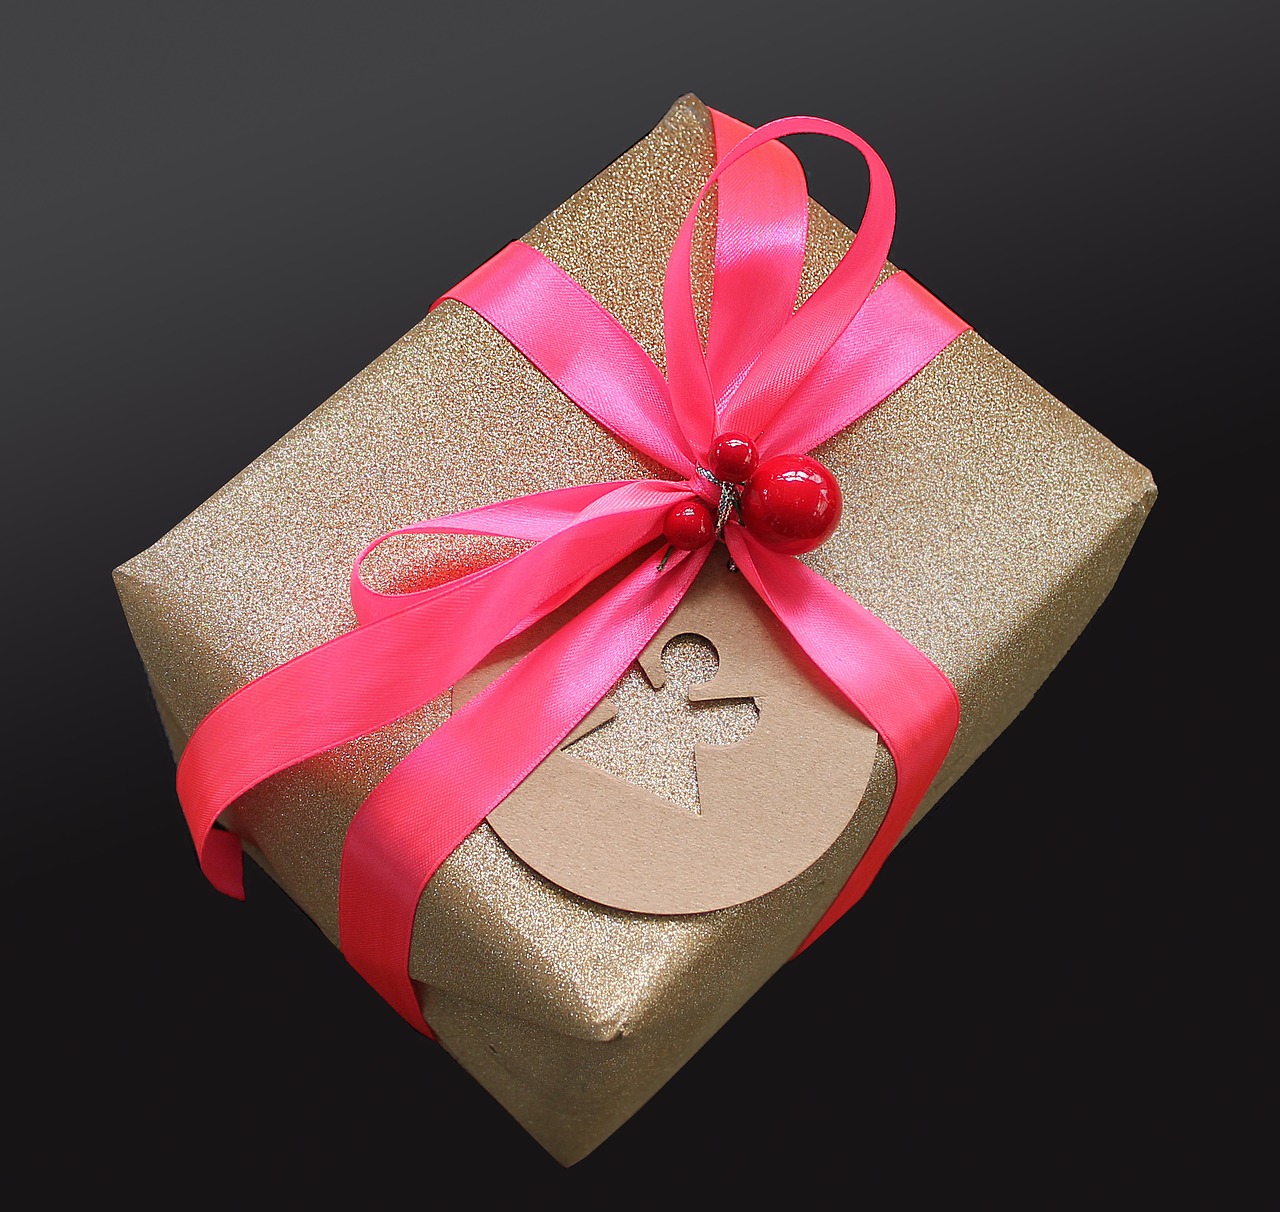 Dárková balení a exkluzivně zabalené dárky potěší věrné zákazníky i klienty